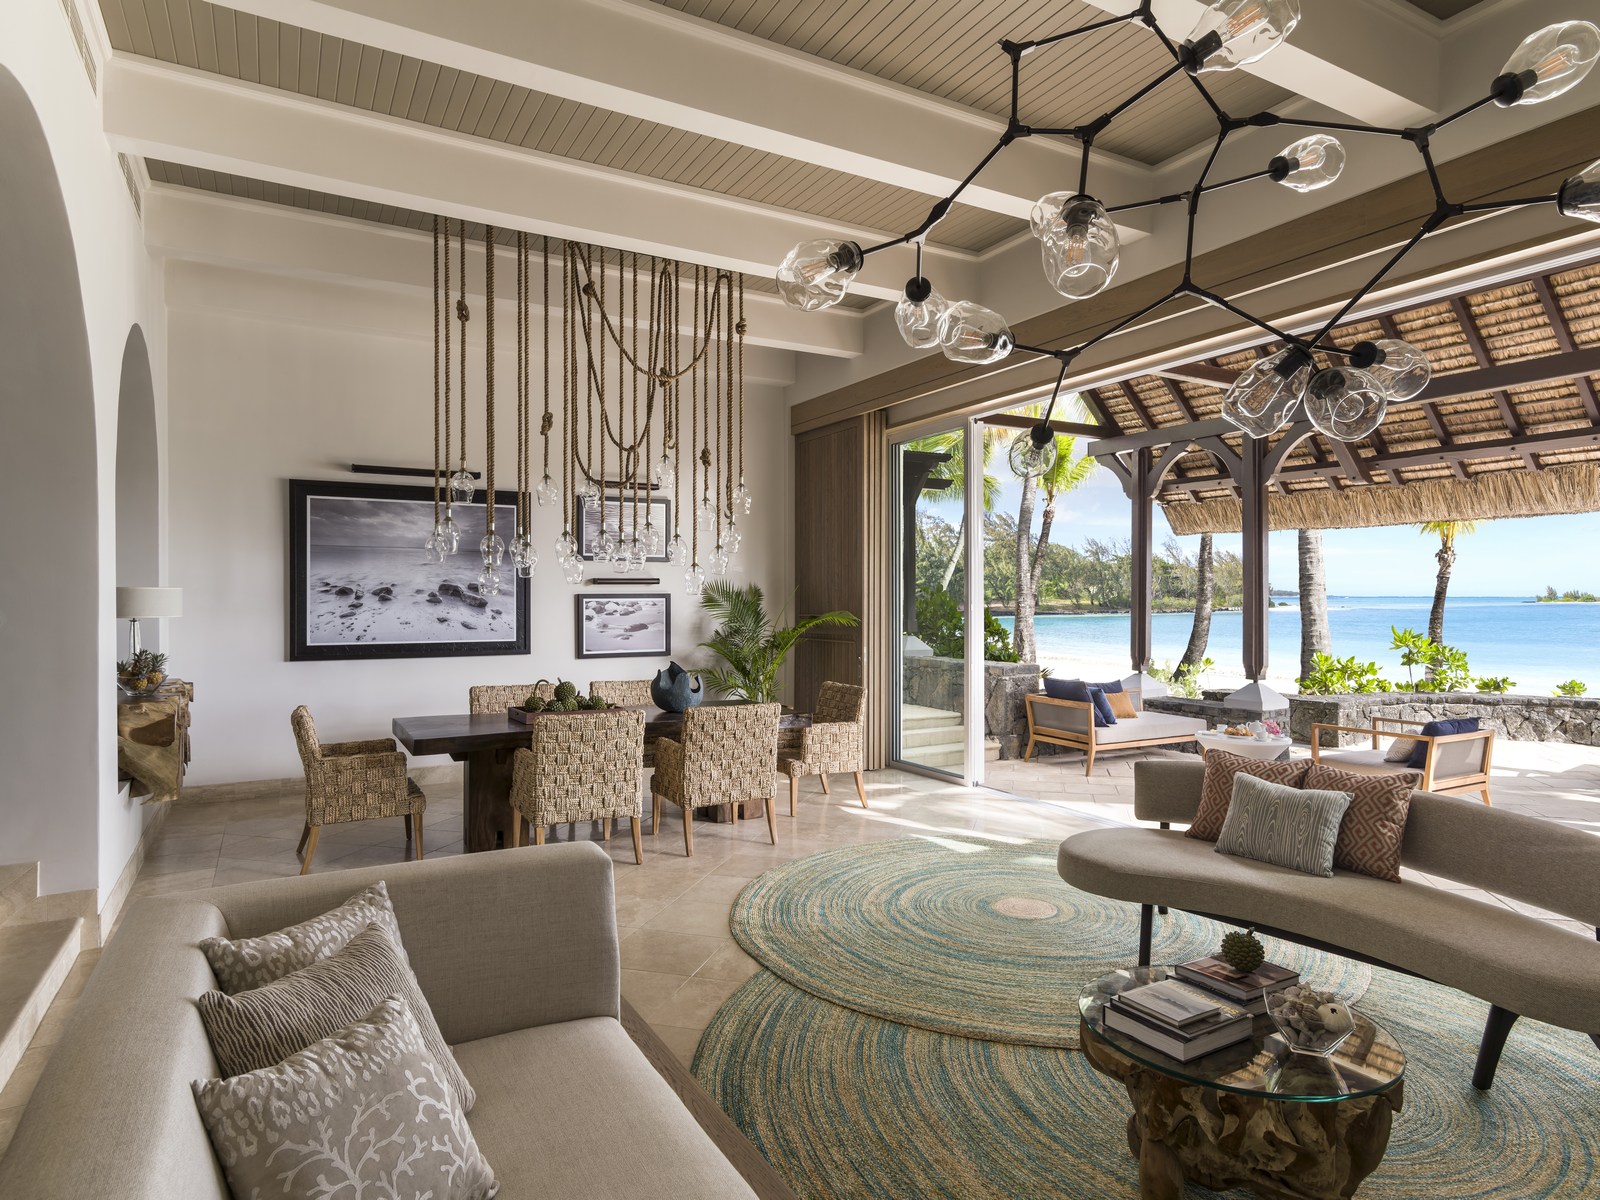 Living room of La suite at Shangri La Le Touessrok, Mauritius